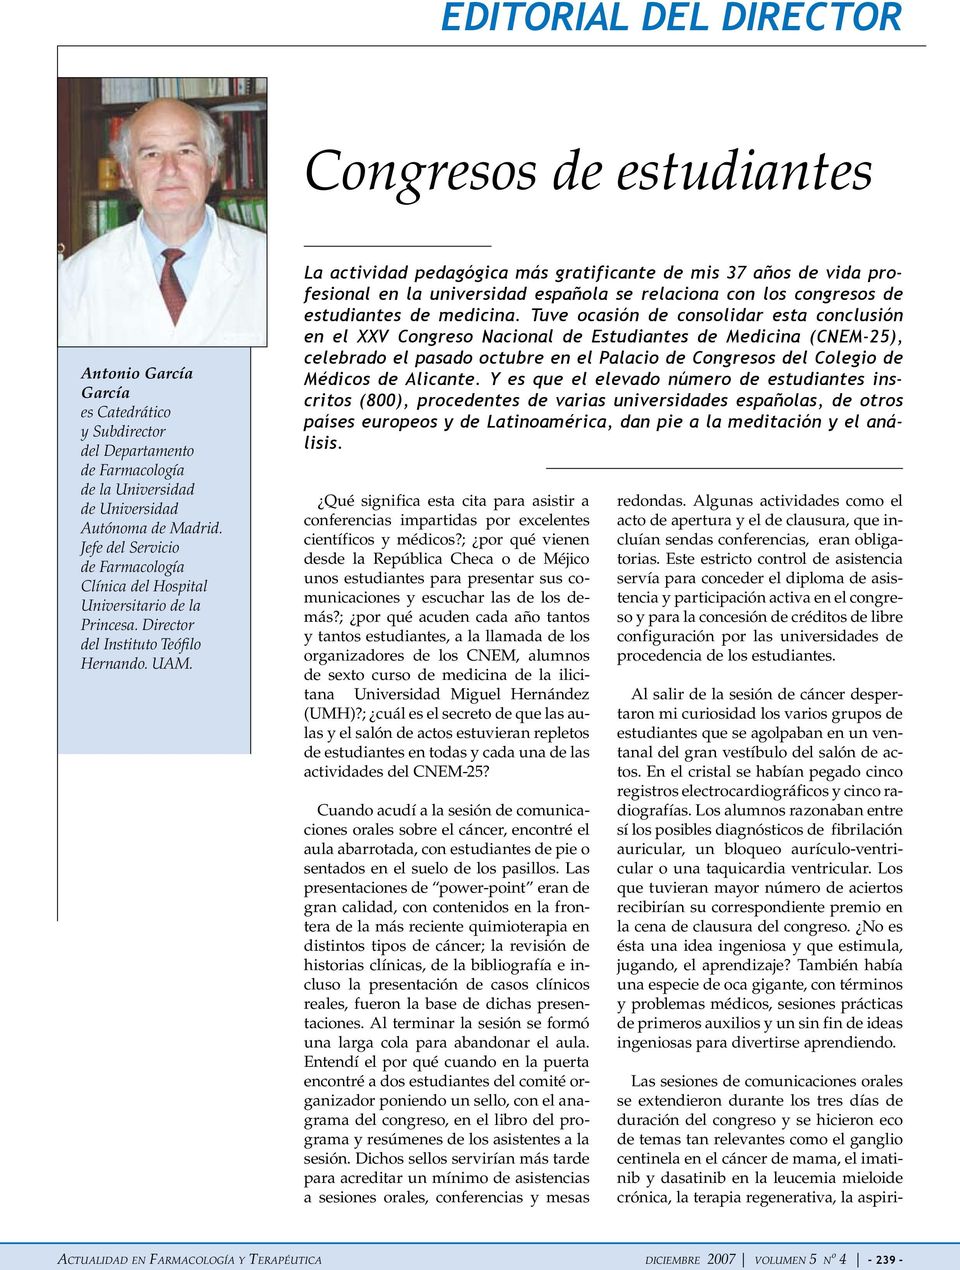 La actividad pedagógica más gratificante de mis 37 años de vida profesional en la universidad española se relaciona con los congresos de estudiantes de medicina.